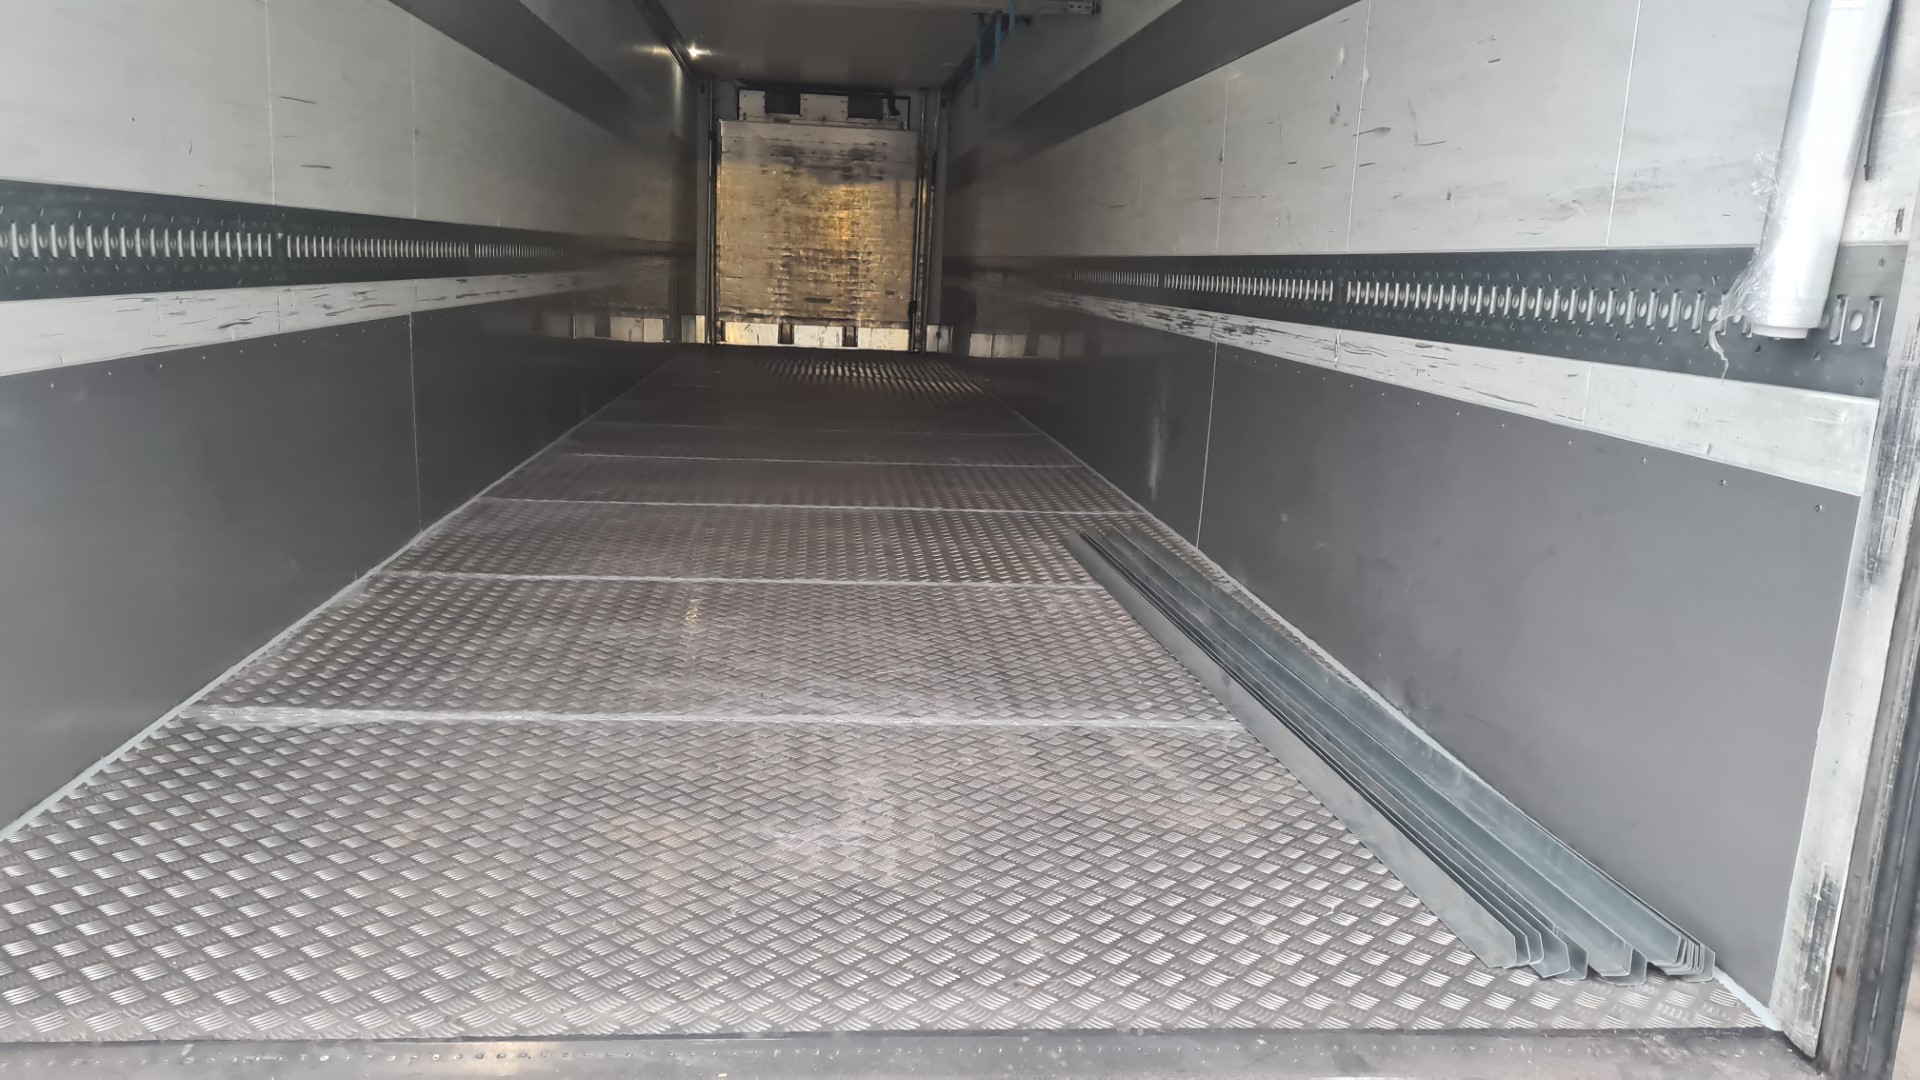 Ogrzewanie plandeki podłogowej w naczepach ciężarówek do ładunków sypkich -  Polcontact